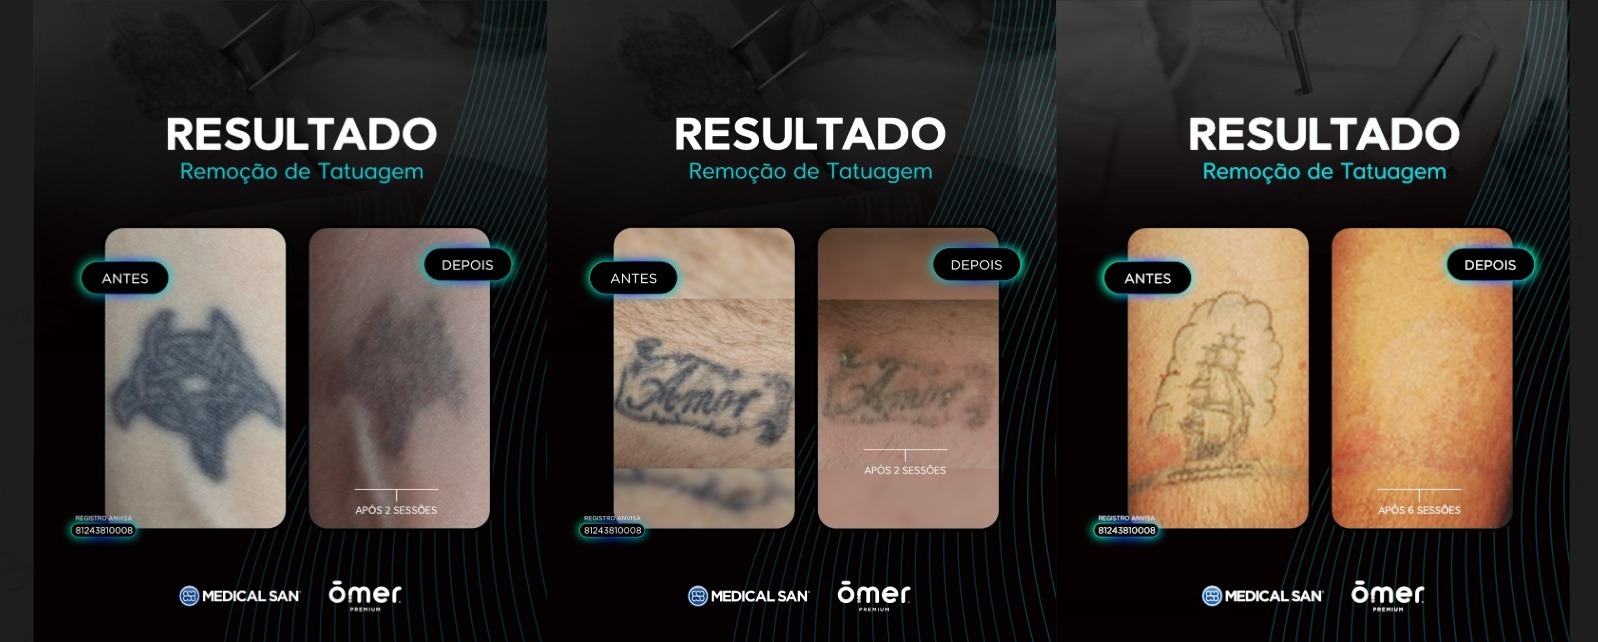 Comparação de antes de depois do laser para remoção de tatuagens Ômer Premium